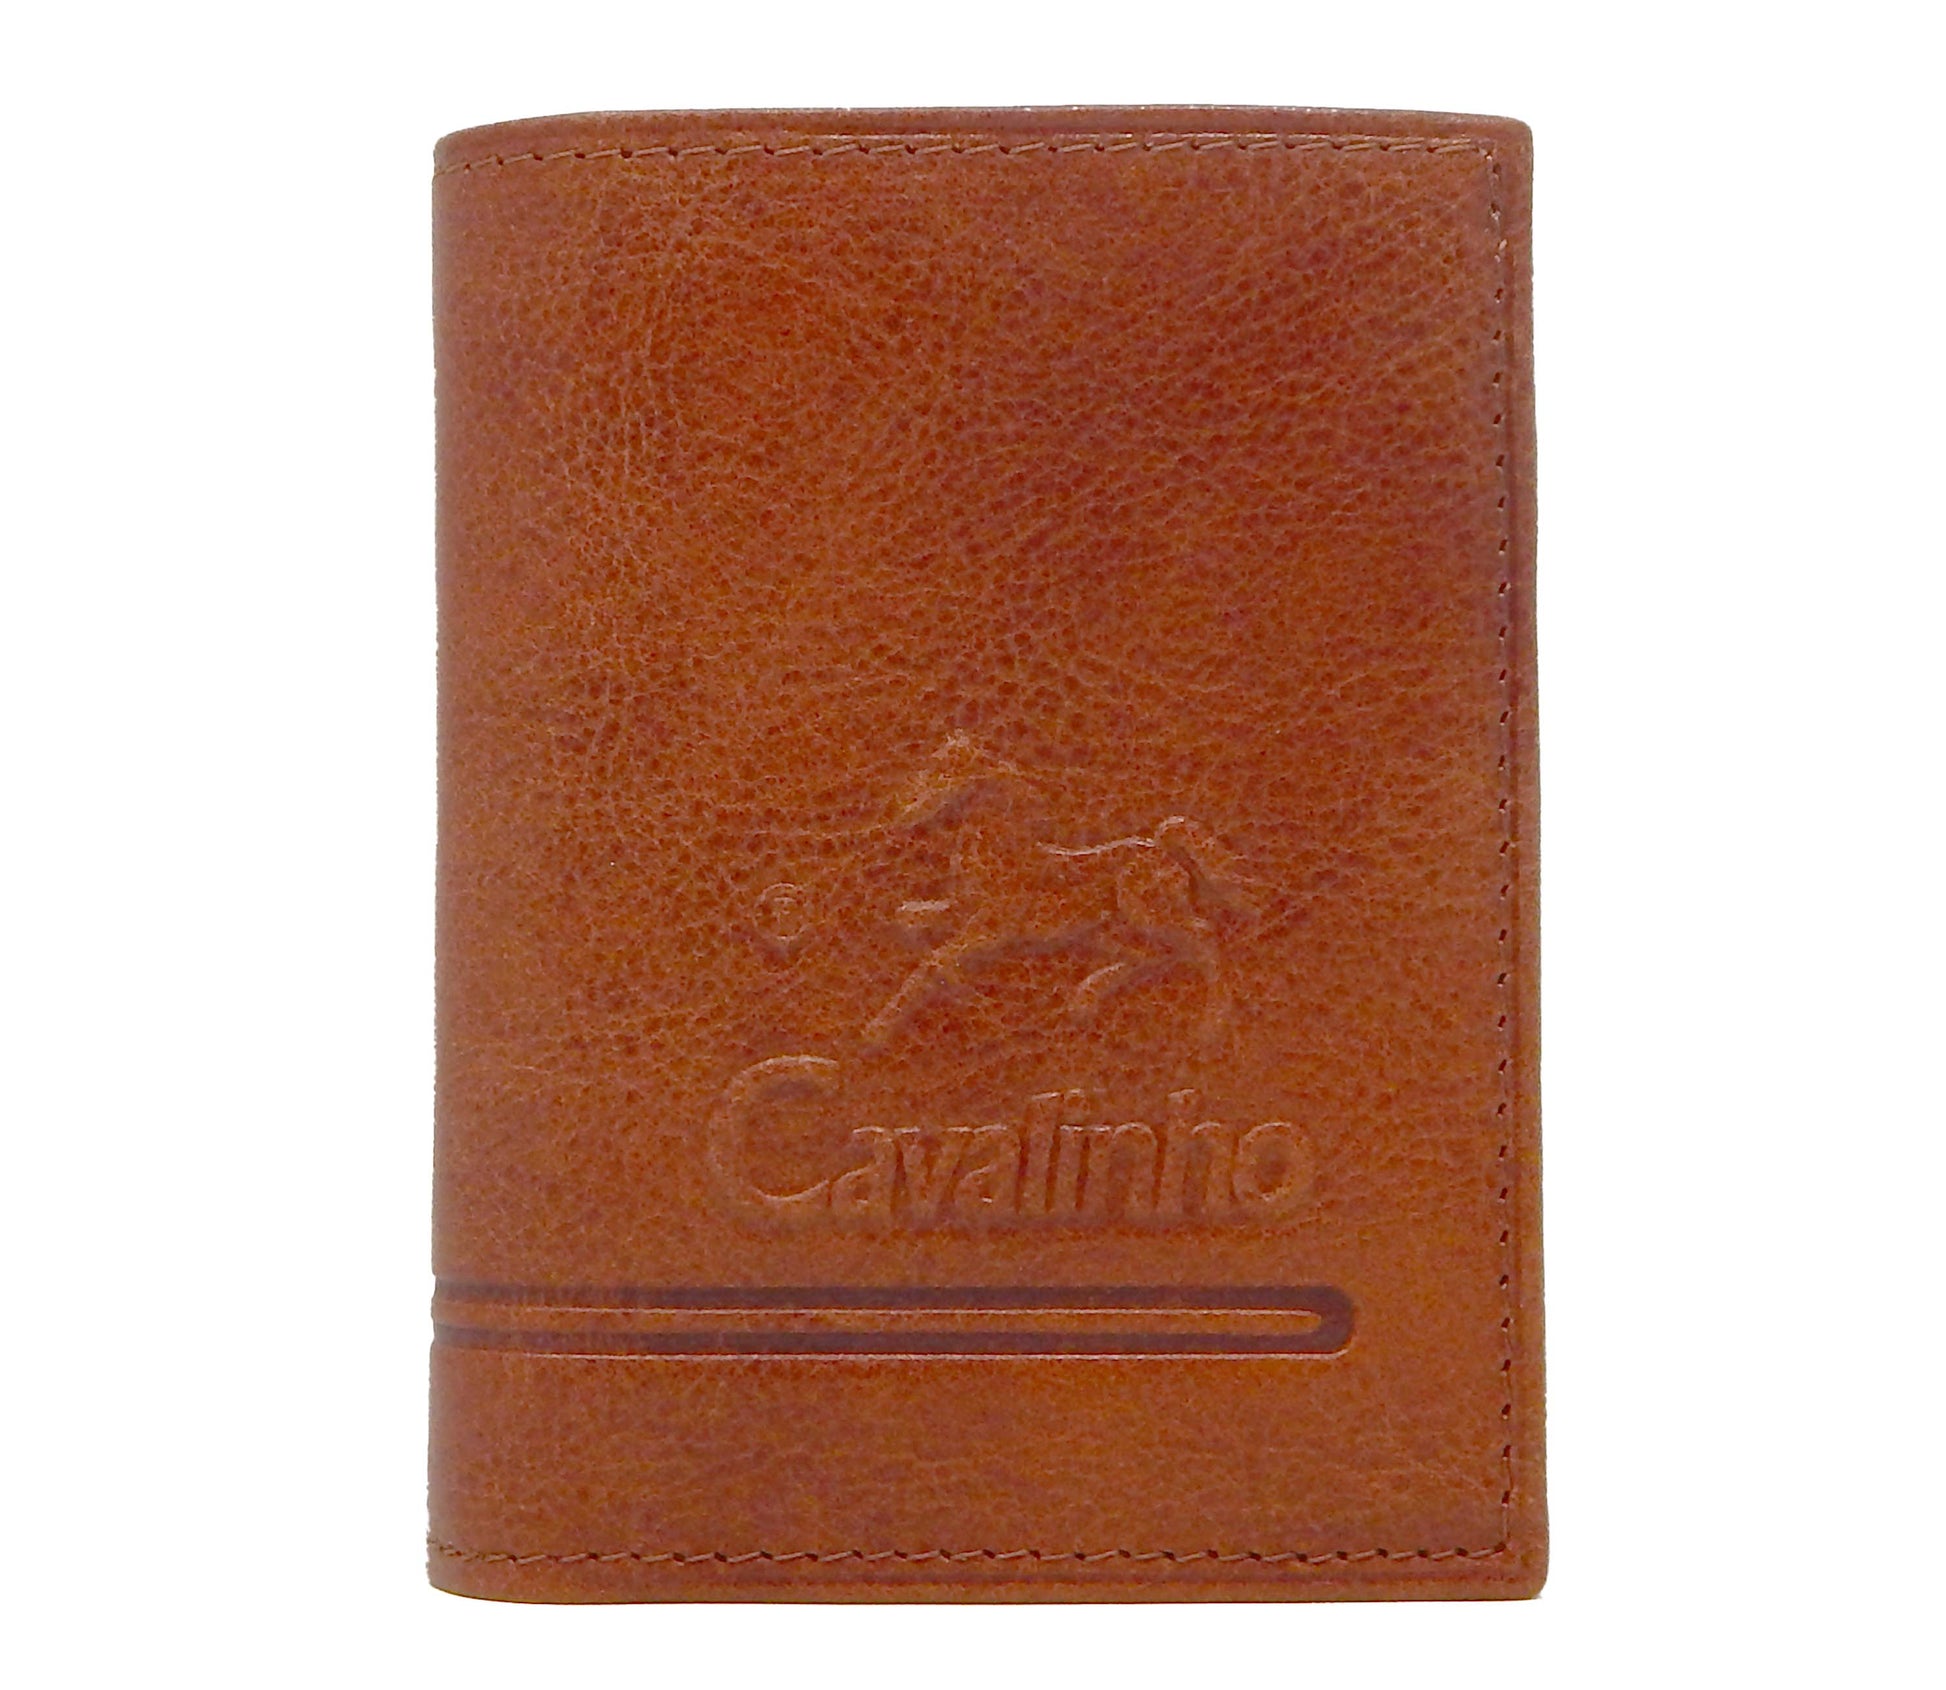 #color_ SaddleBrown | Cavalinho Men's Trifold Leather Wallet - SaddleBrown - 28160522.13.99_1